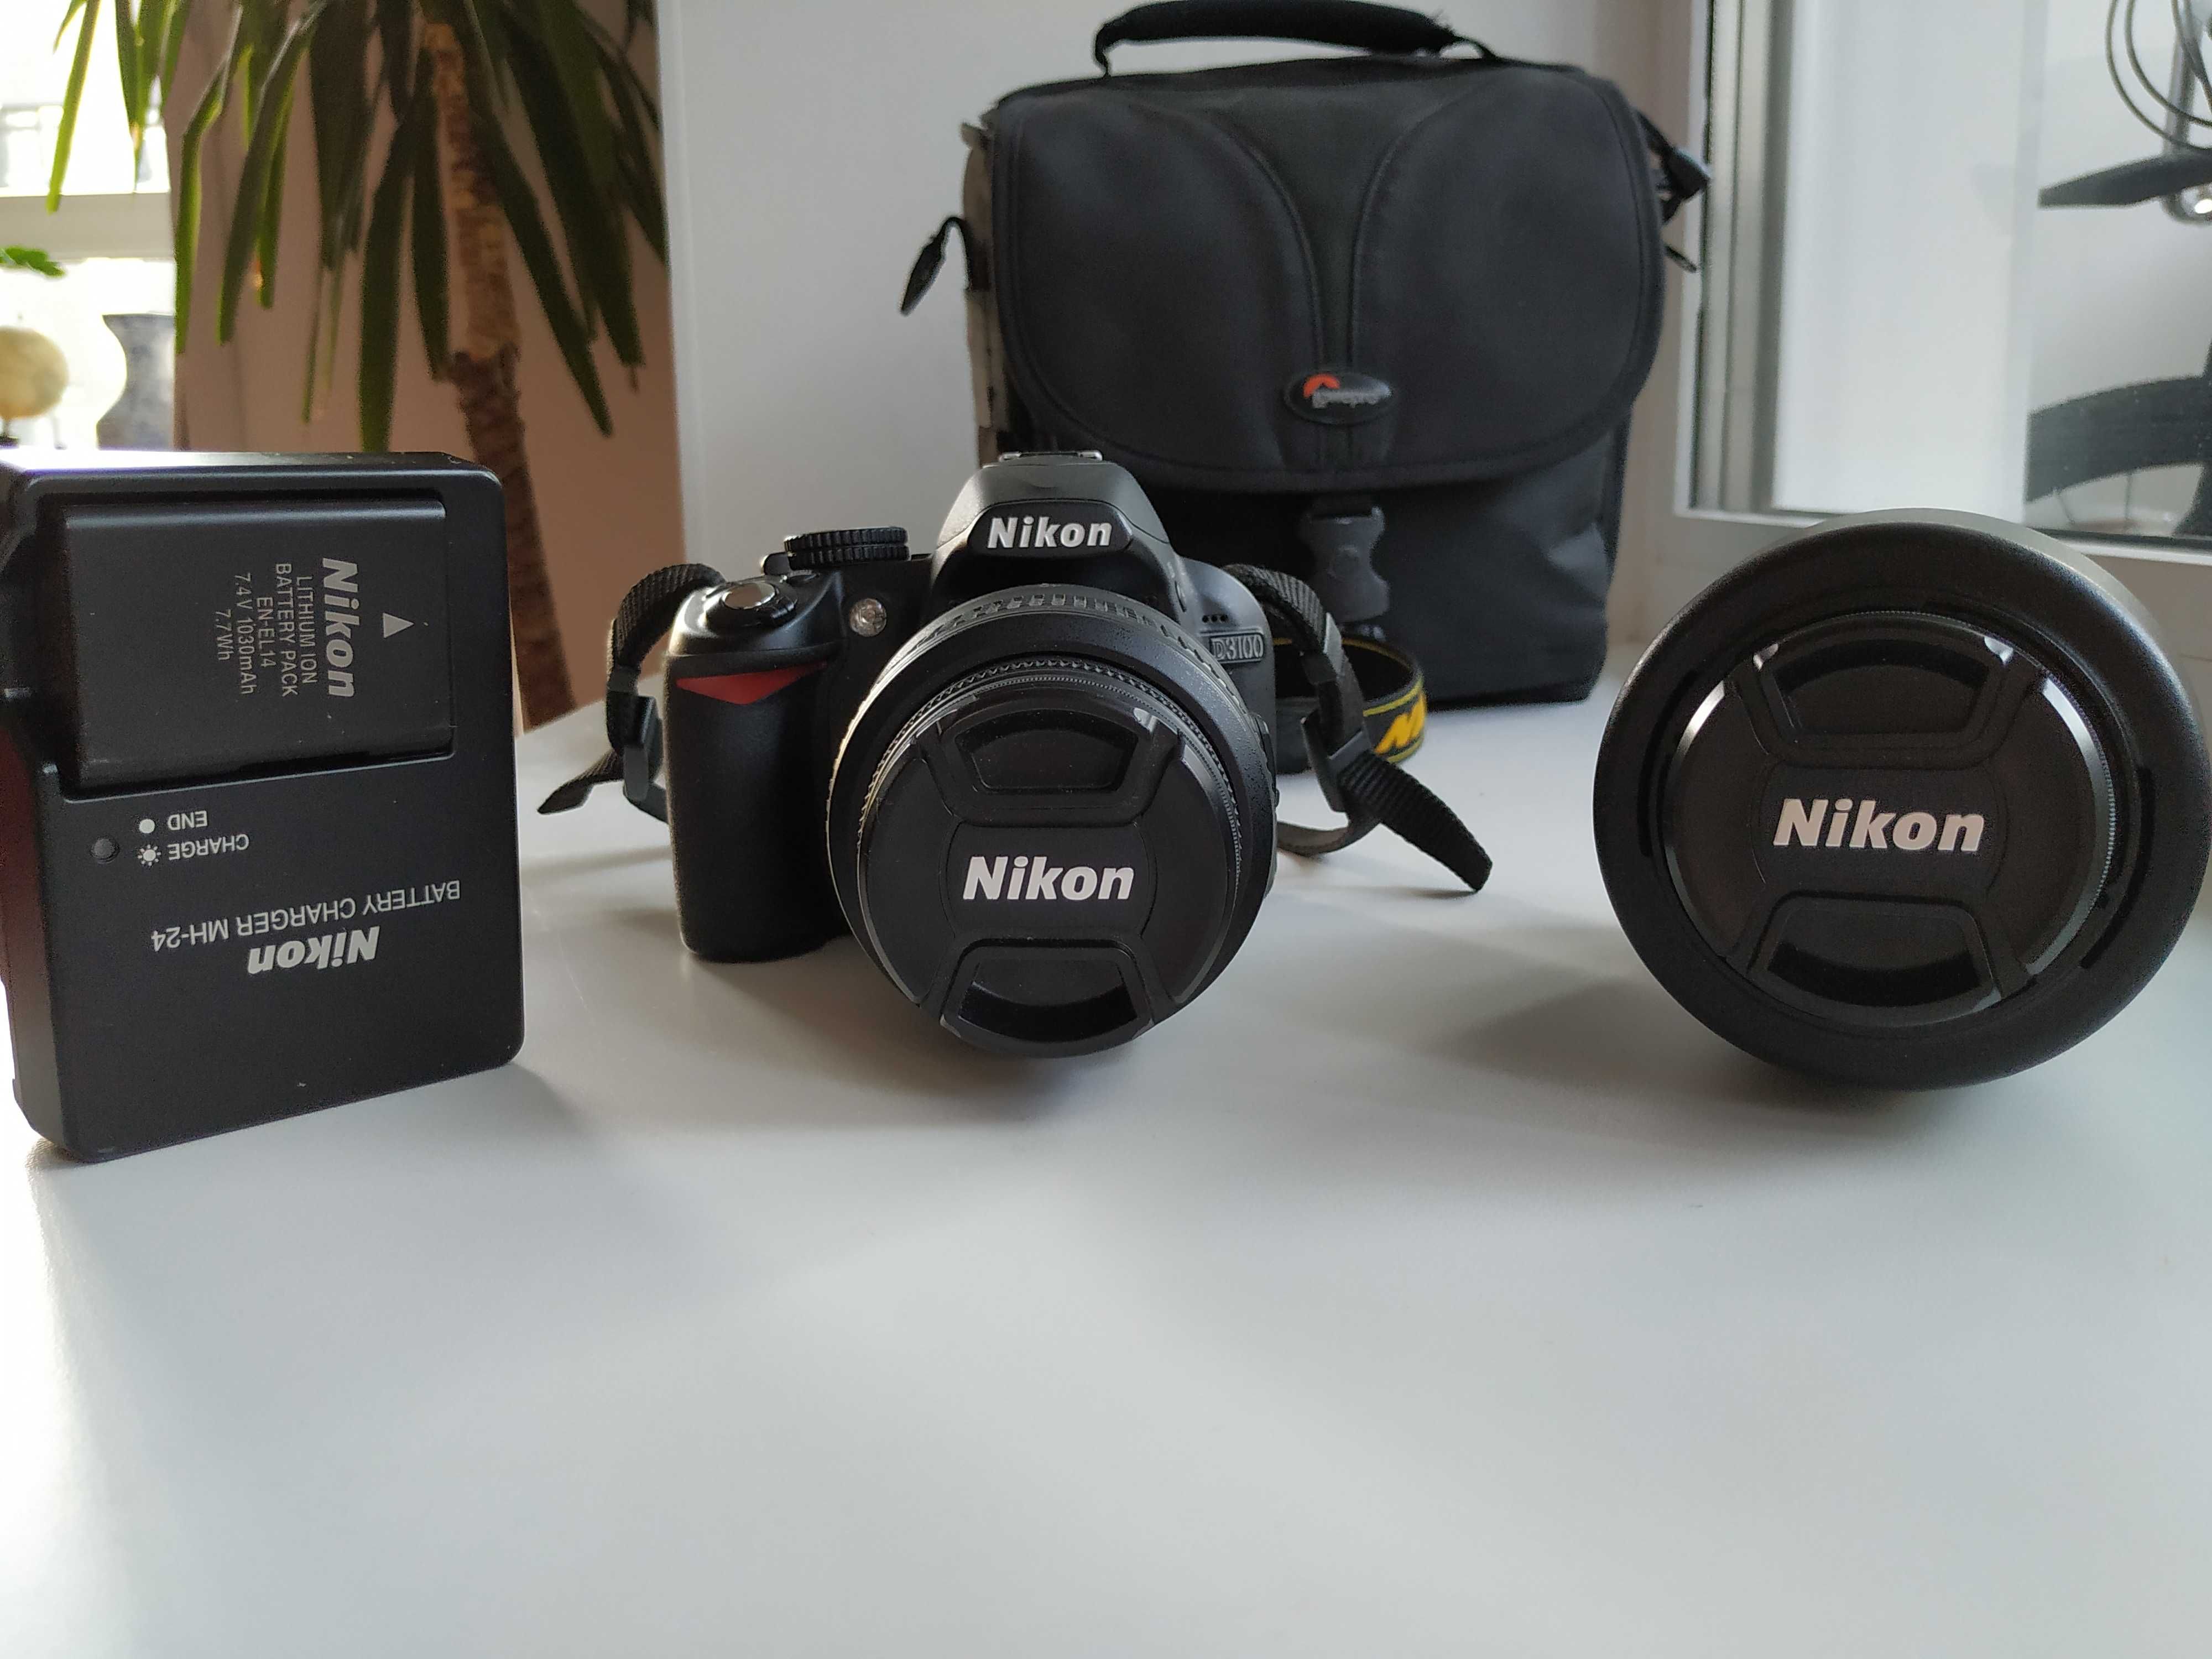 Nikon D3100 + Nikon 18-55mm f/3.5-5.6G AF-S VR II DX Zoom-Nikkor